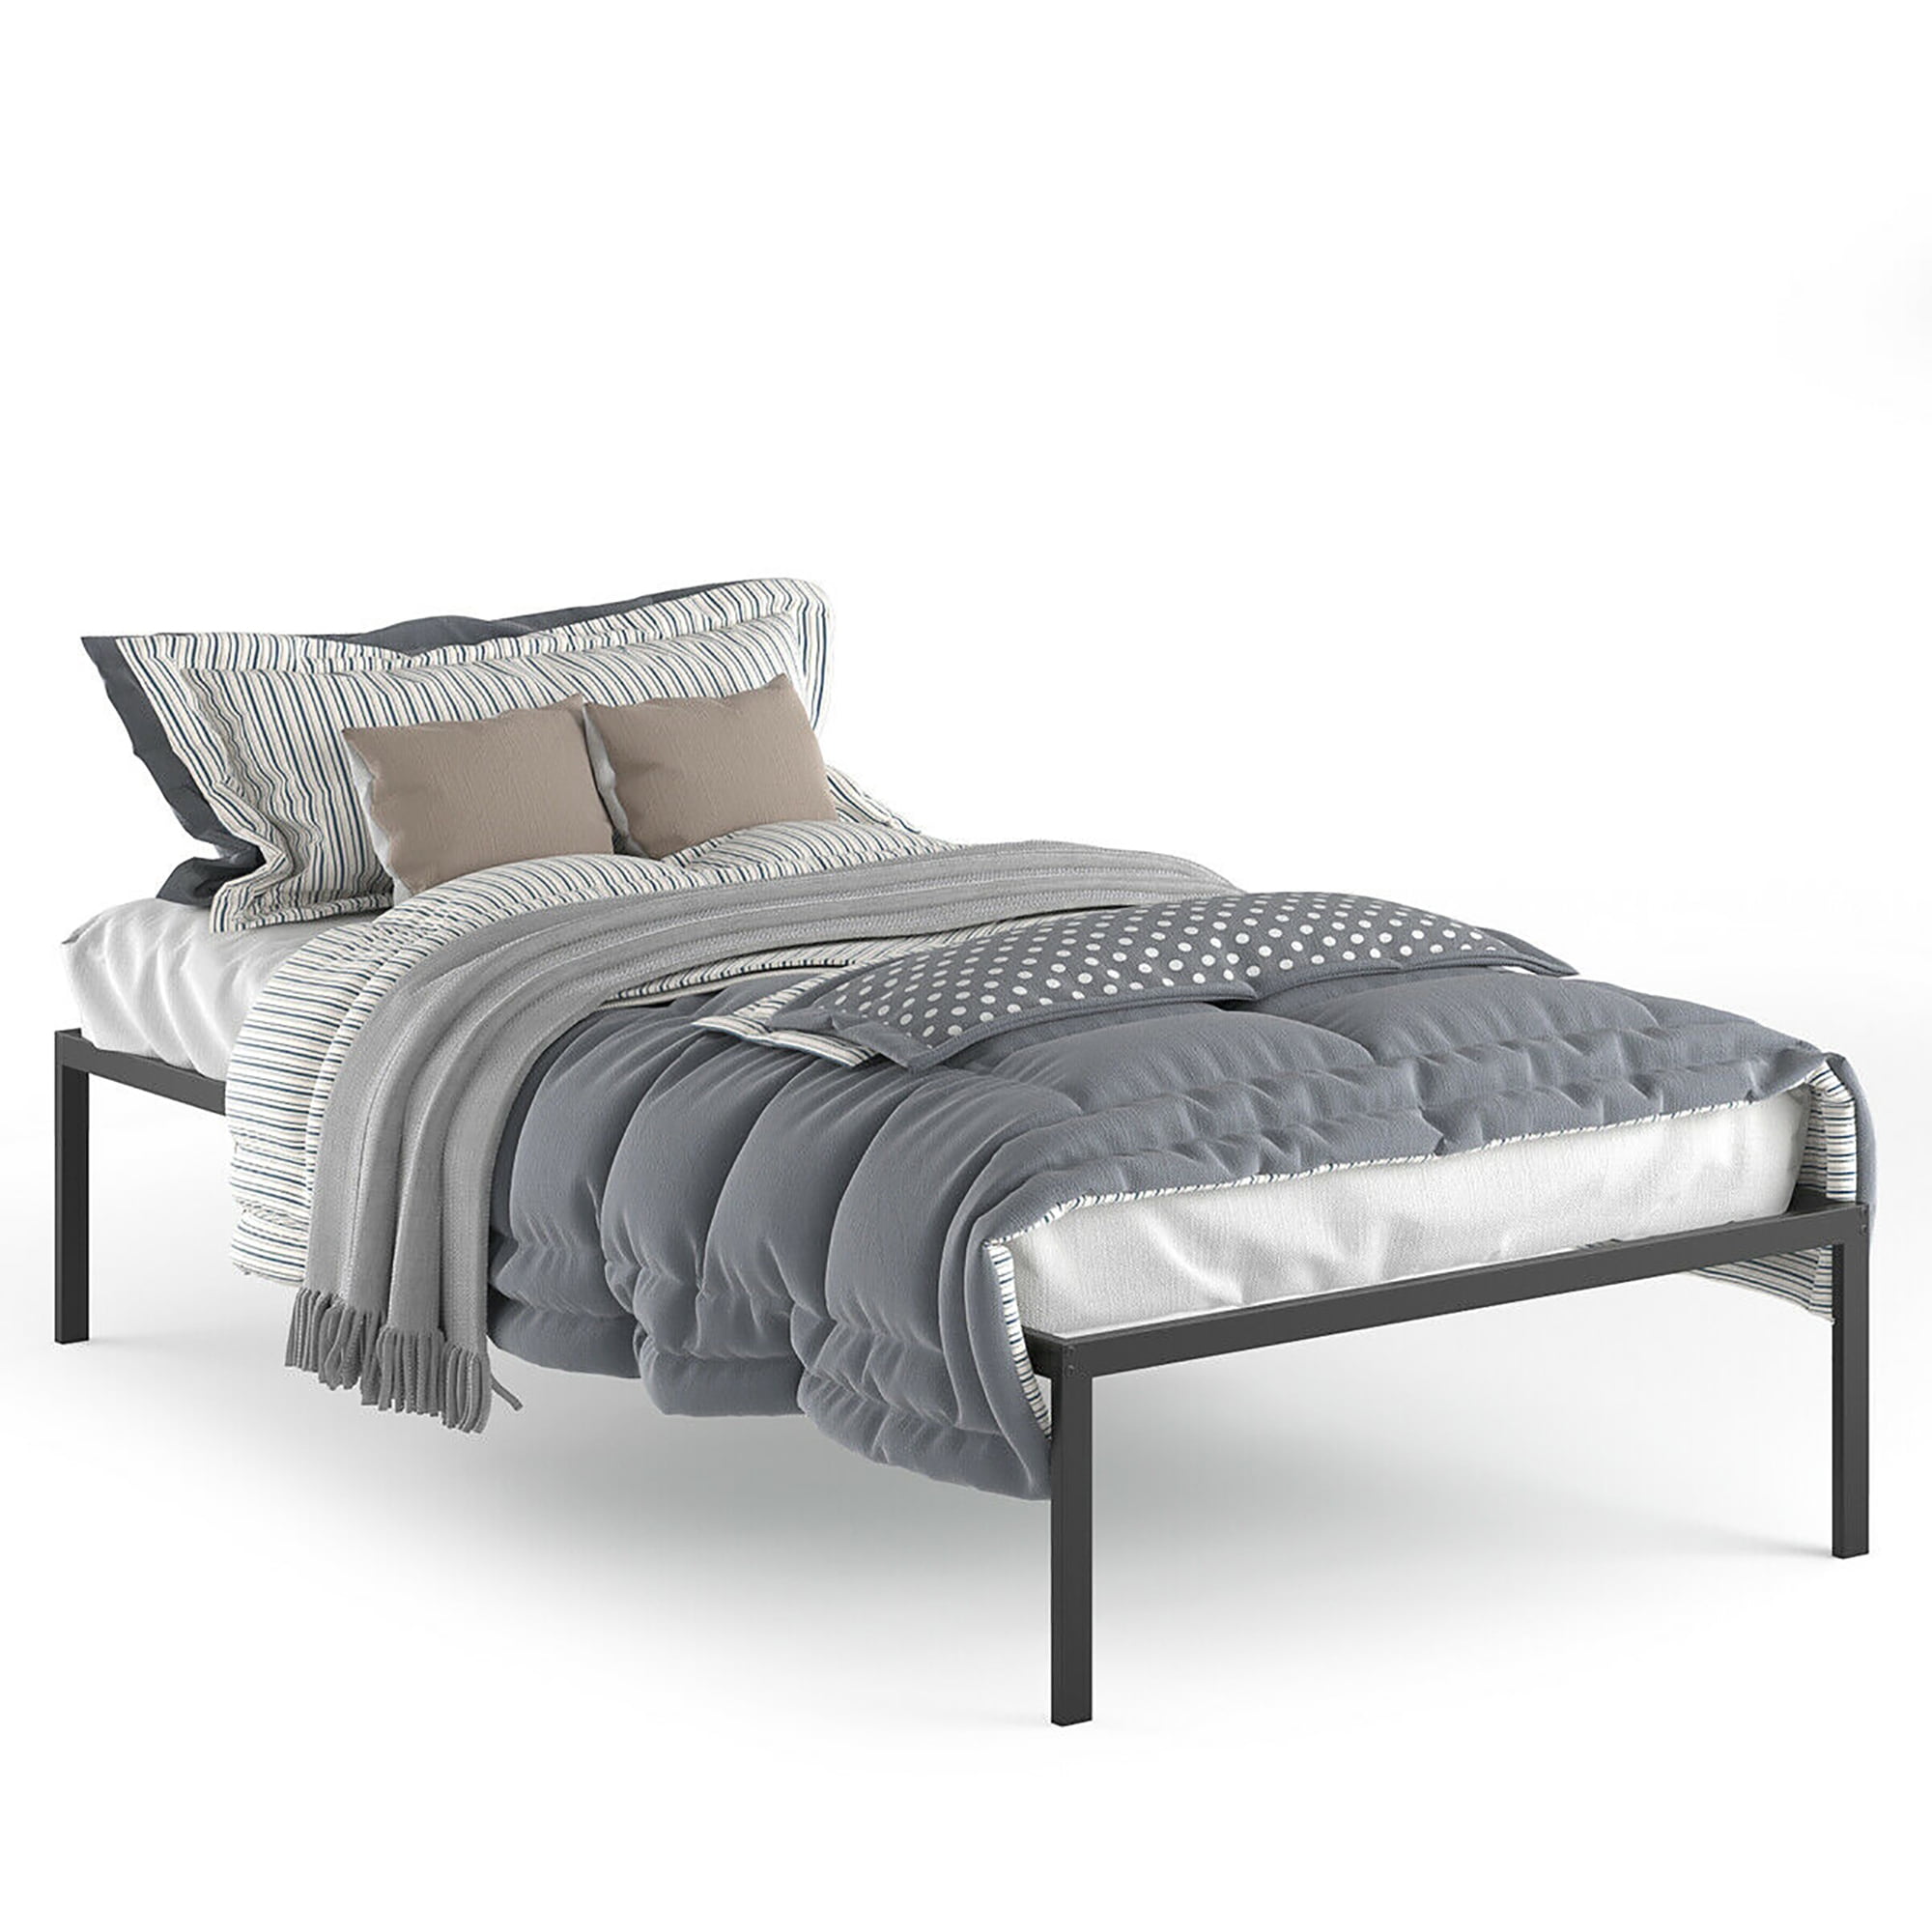 Adjustable Bed Frame, Mainstays 7 Adjustable Bed Frame Black Steel